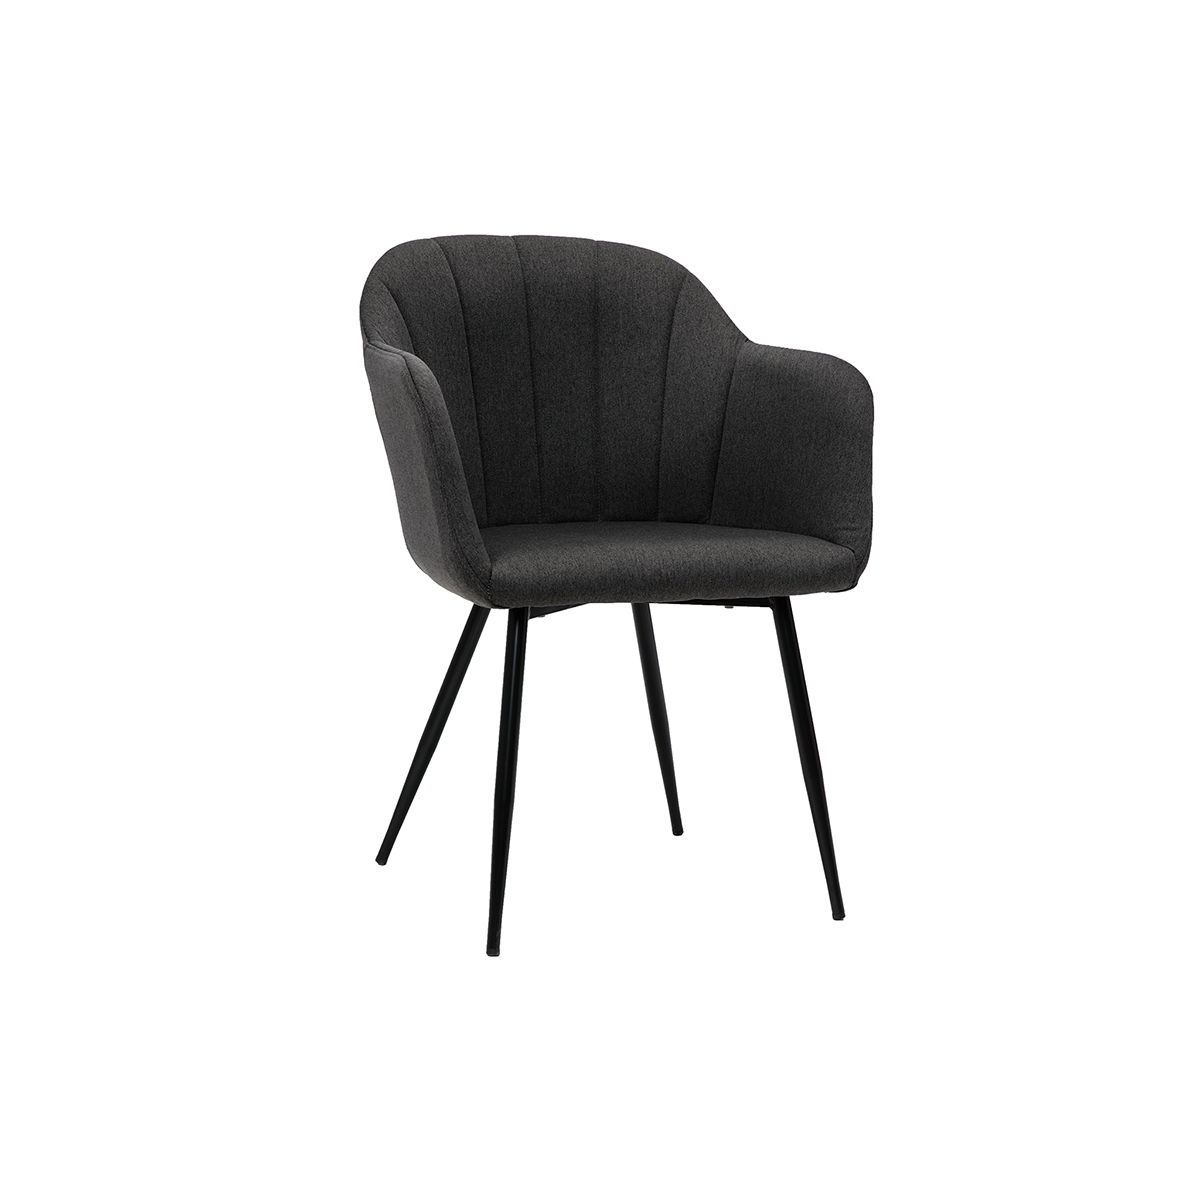 Chaise design tissu gris foncé et pieds métal noir MILLY vue1